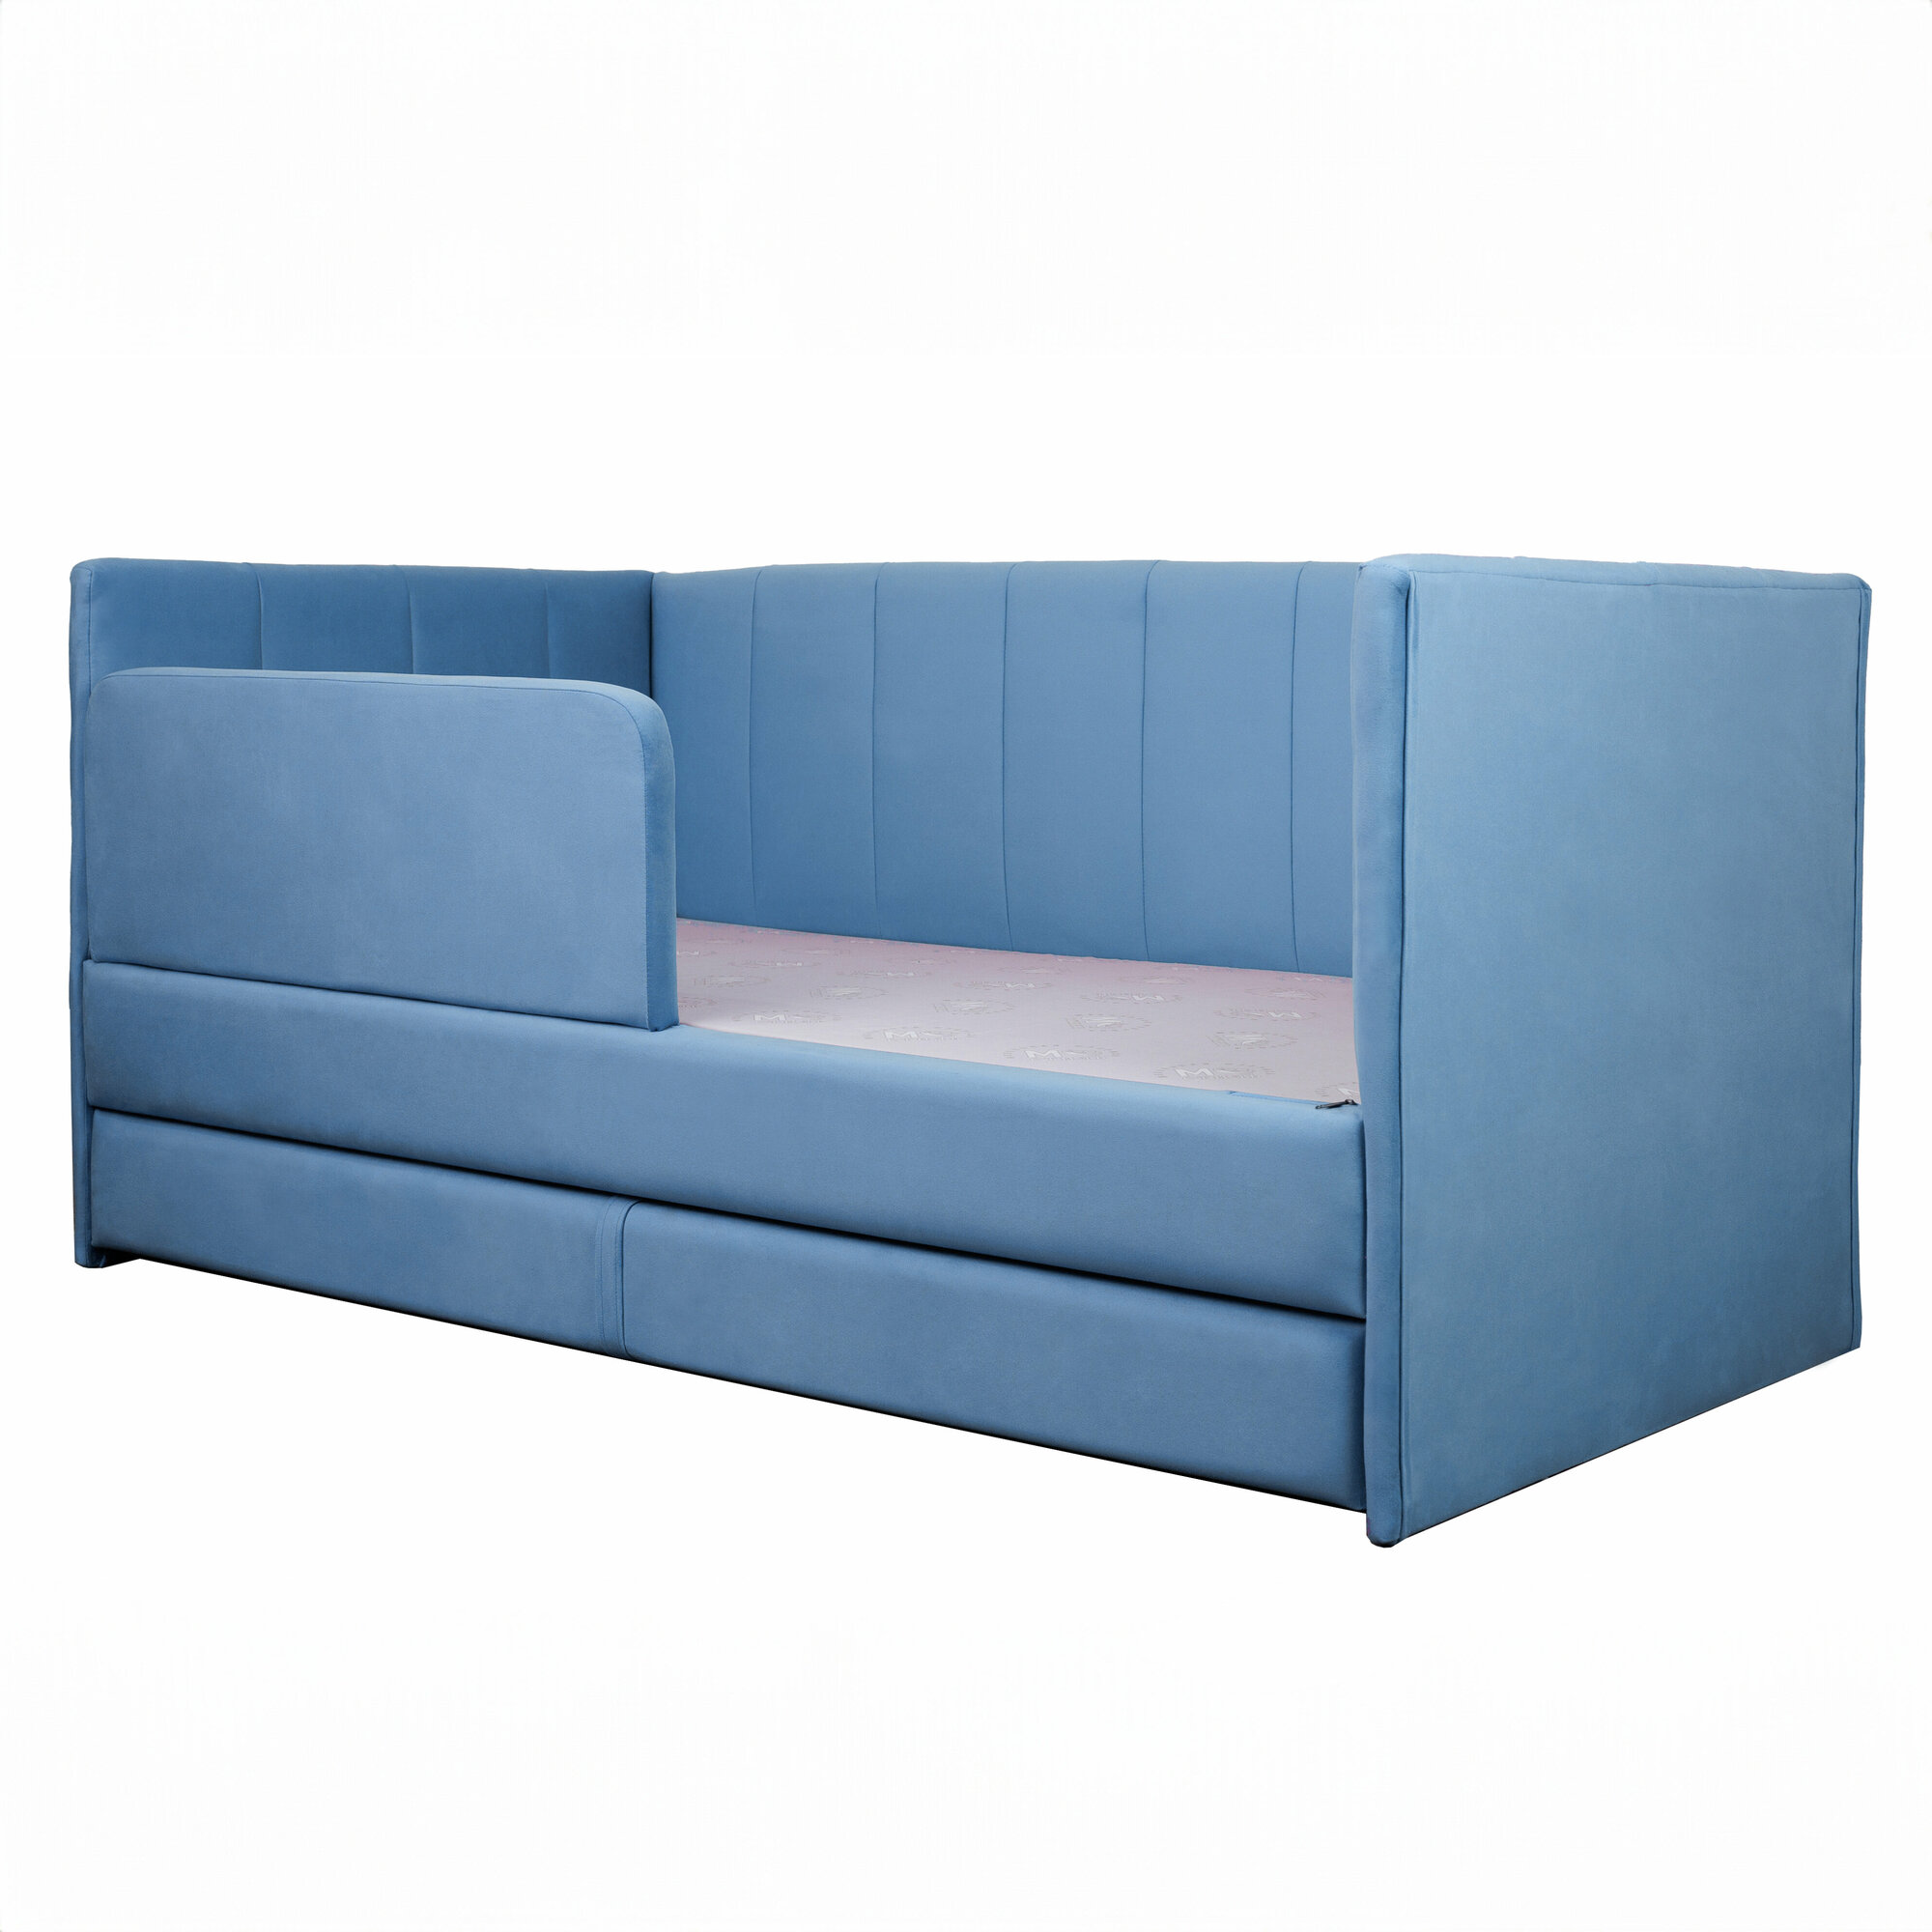 Кровать-диван Хагги 200*90 голубая с дополнительным спальным местом+матрас